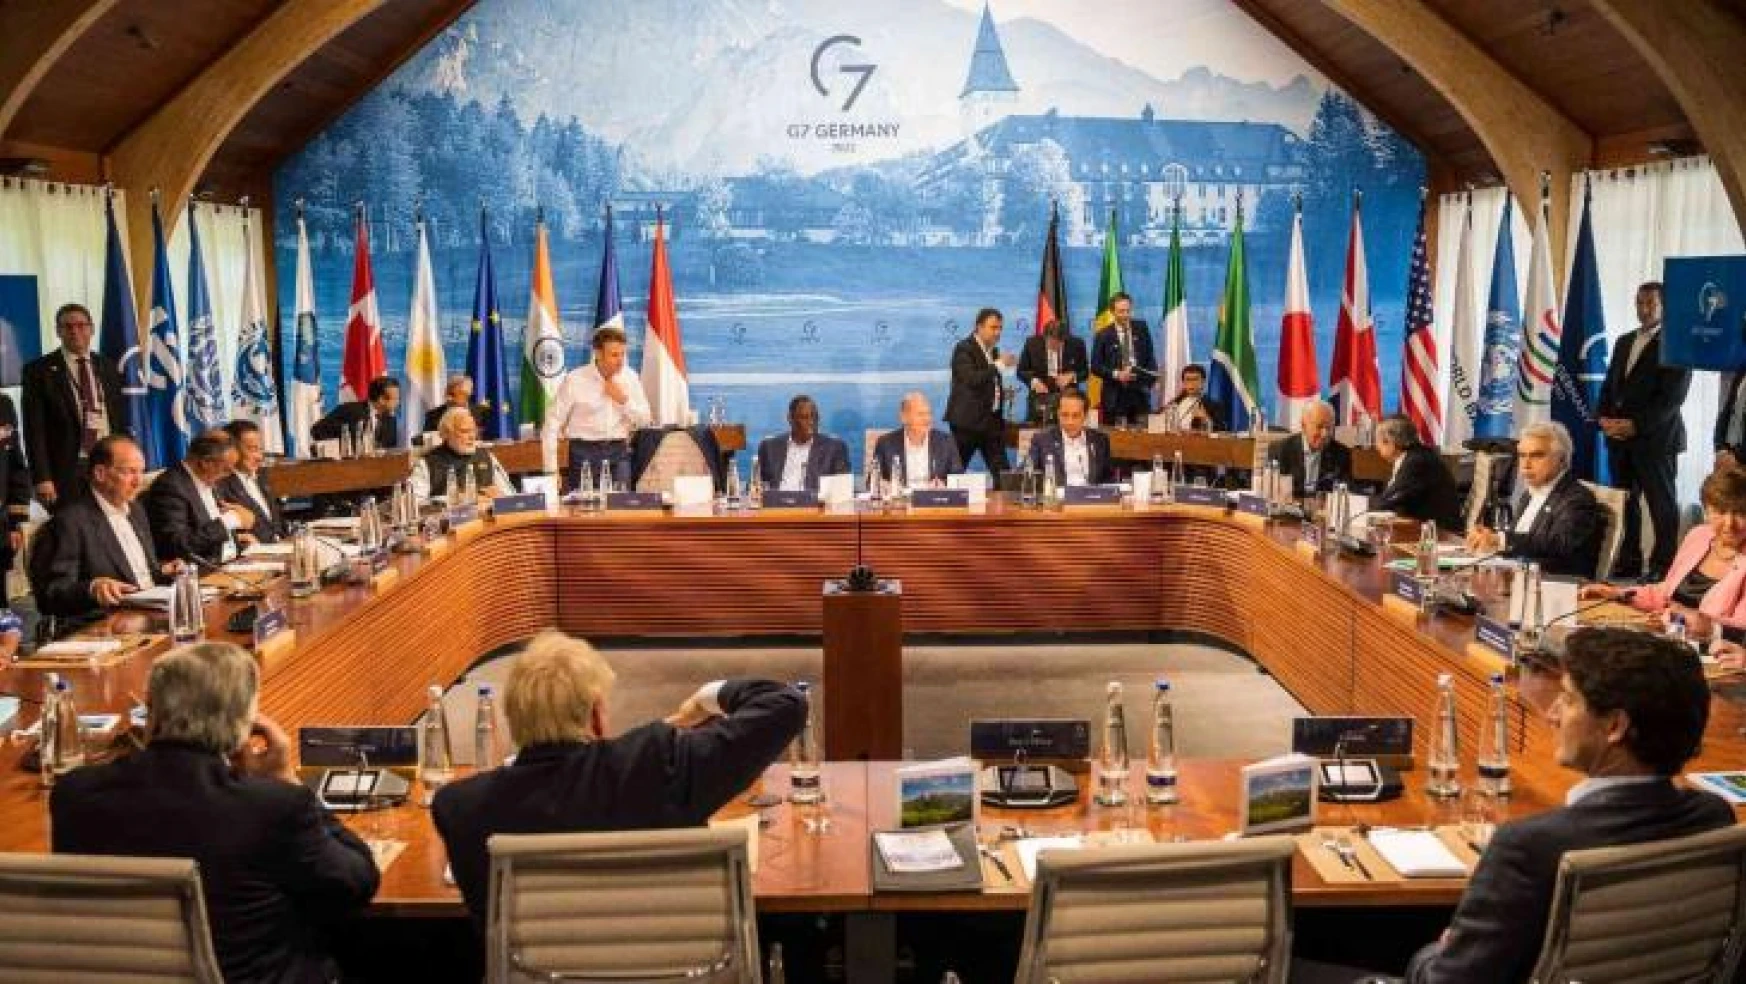 G7, iklim, enerji ve açlıkla mücadelede işbirliğini arttıracak